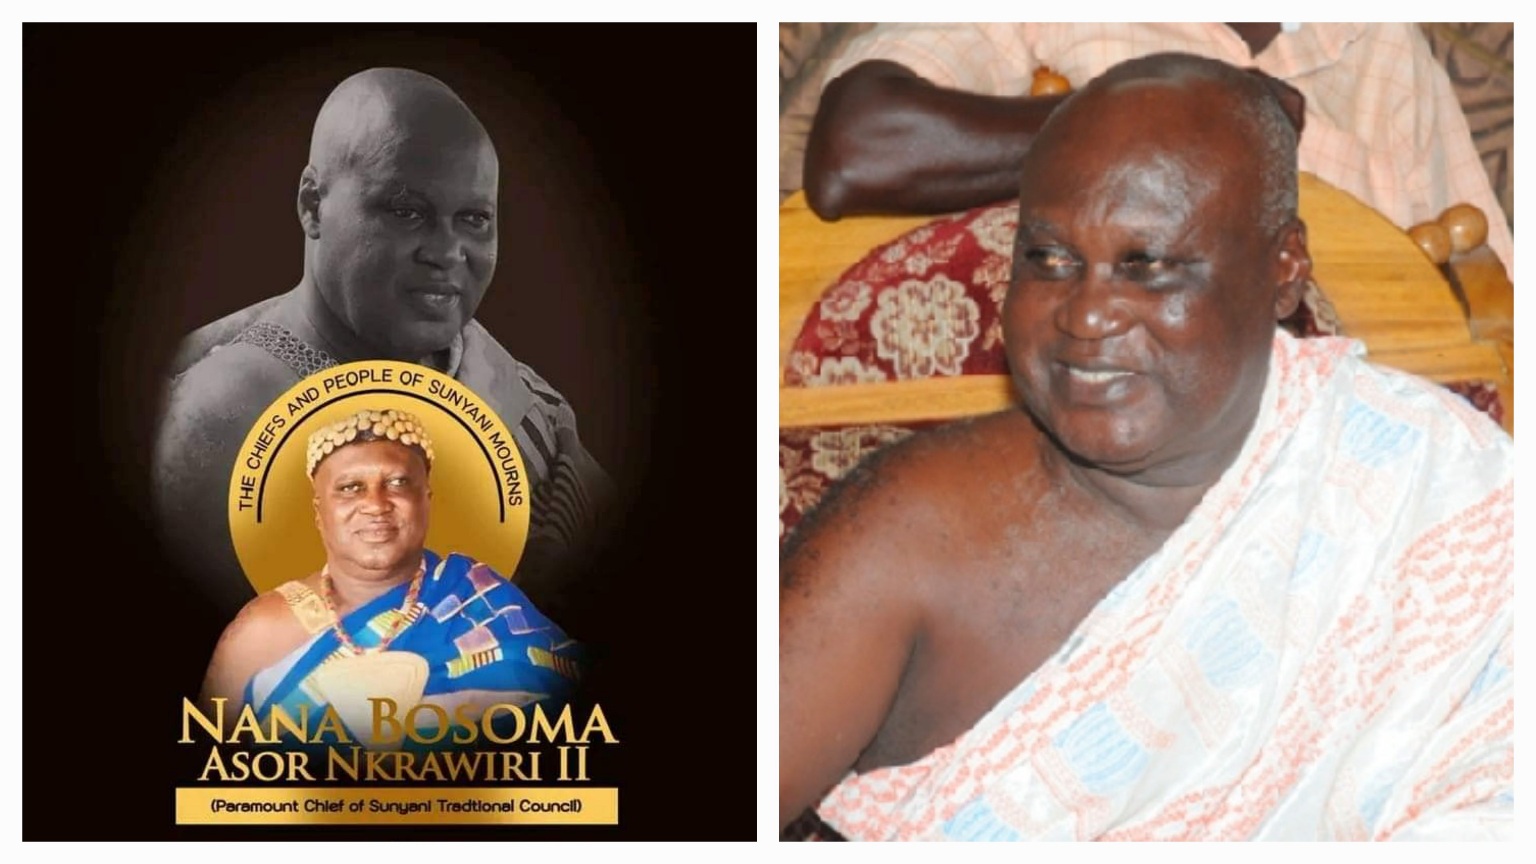 Omanhene of Sunyani - Nana Bosoma Asor Nkrawiri II